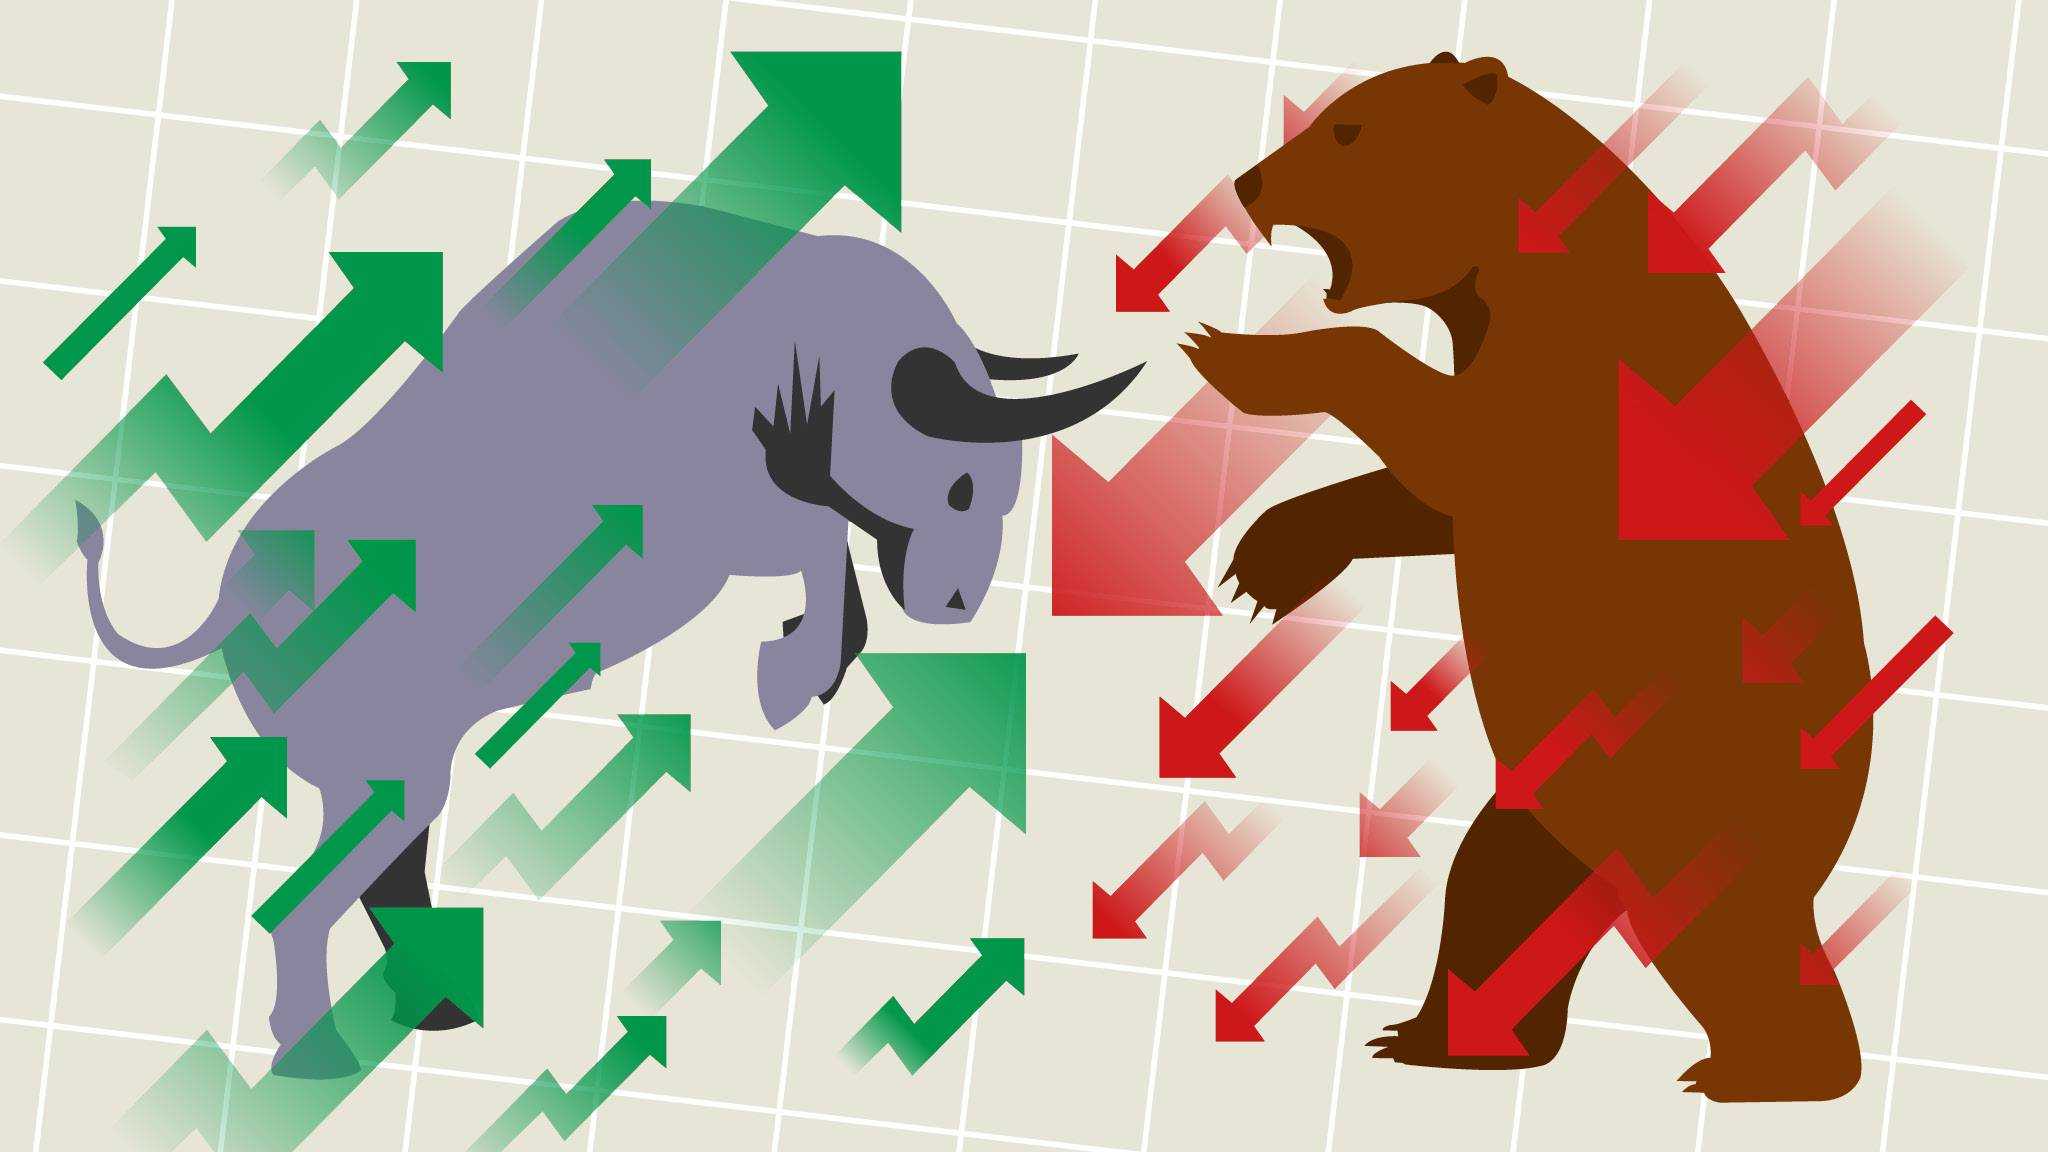 Что означает бык и медведь на бирже | интернет трейдинг.биржевая торговля.инвестиции